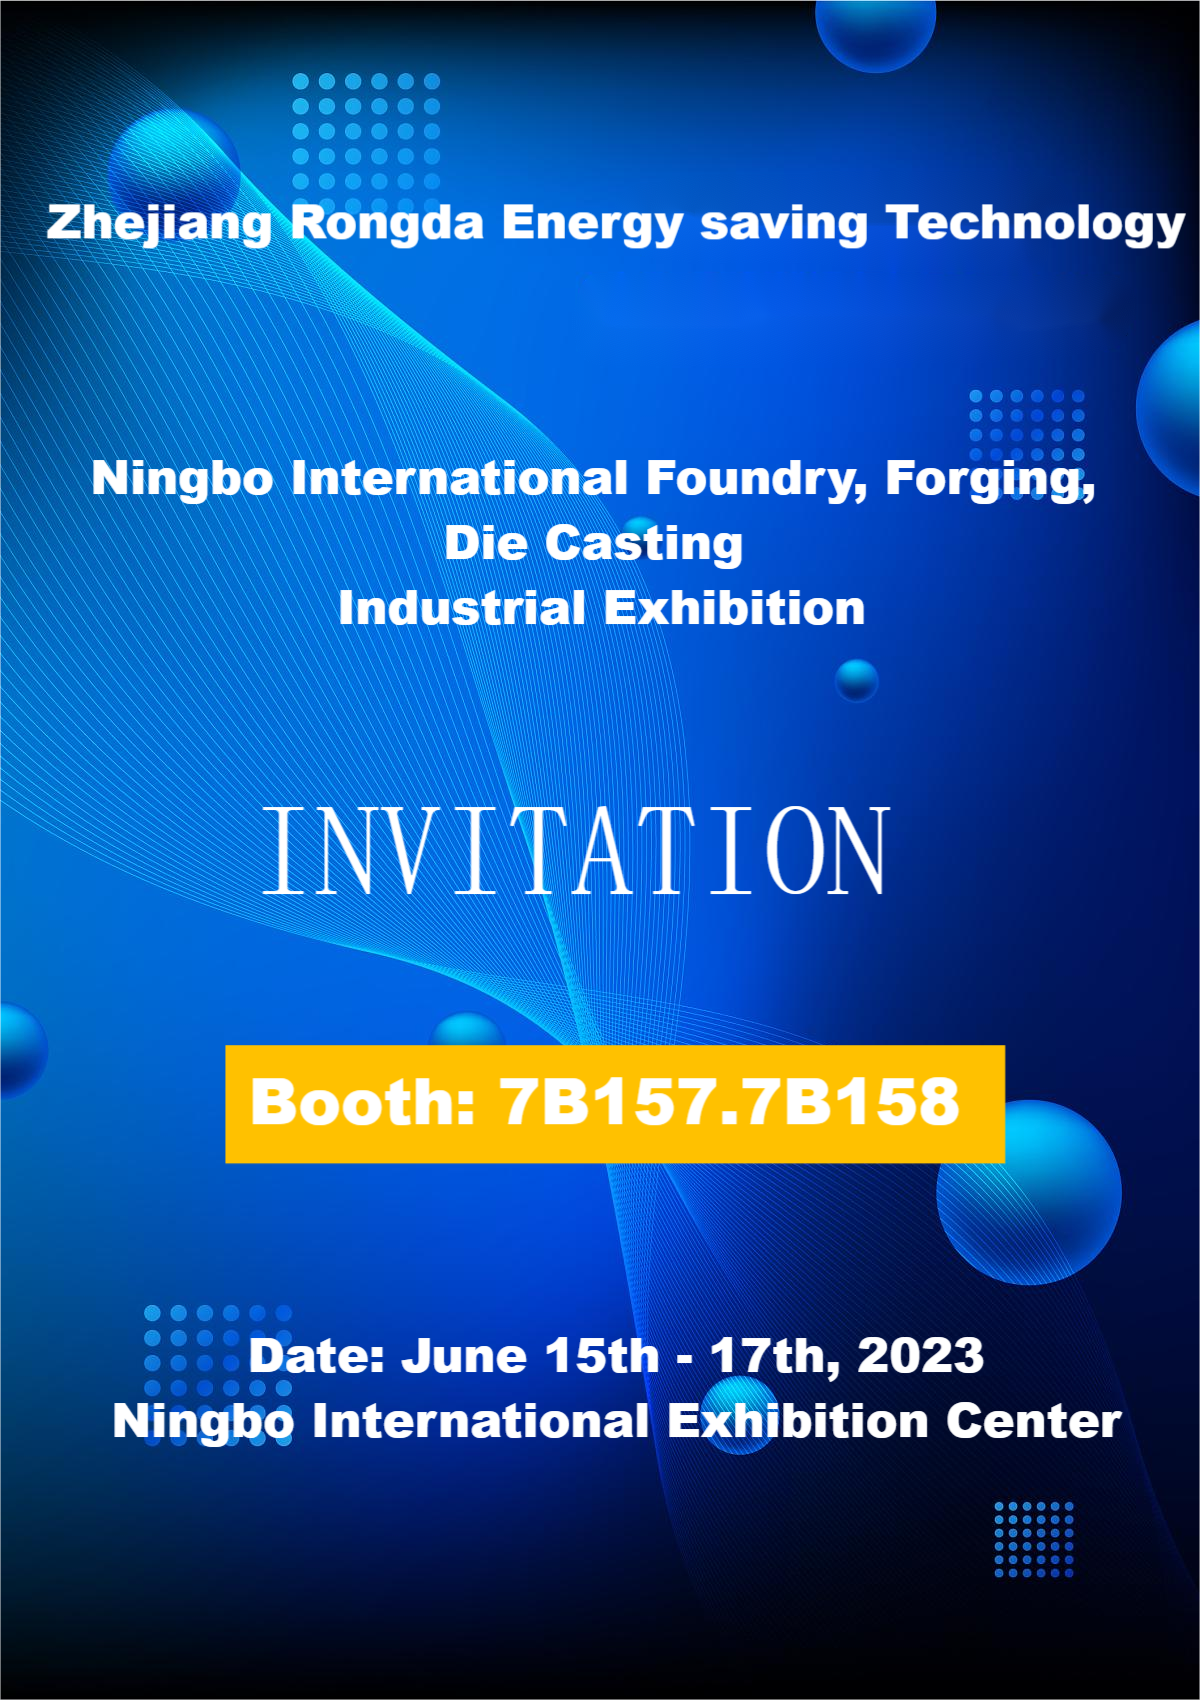 ចូលរួមជាមួយពួកយើងនៅ Ningbo International Foundry, Forging, and Die Casting Industrial Exhibition!